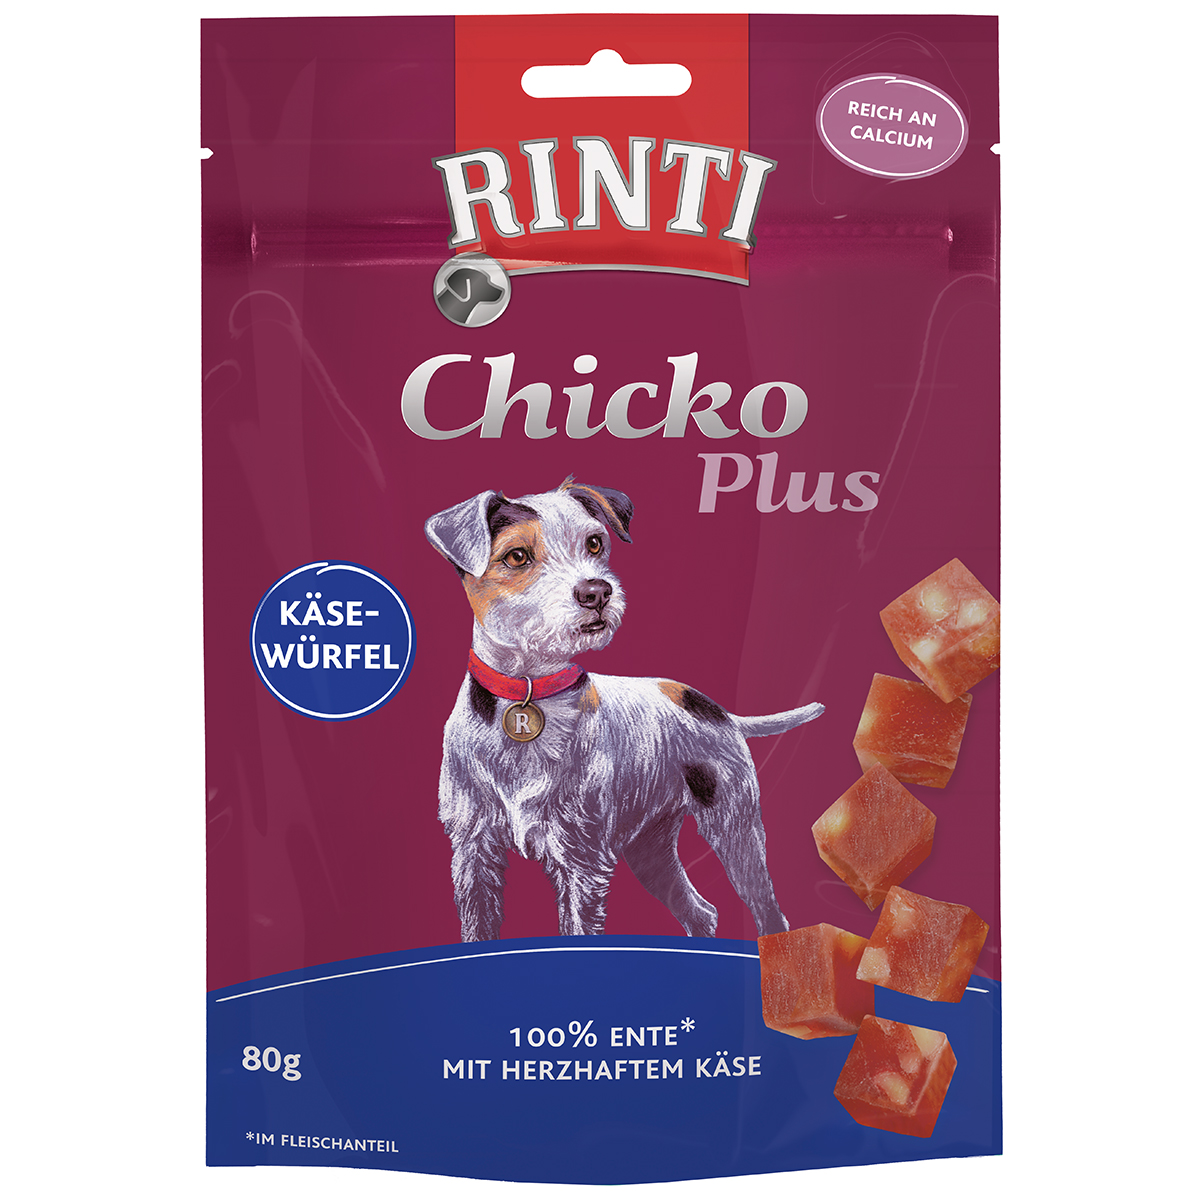 RINTI Chicko Plus sýrové kostky s kachním masem